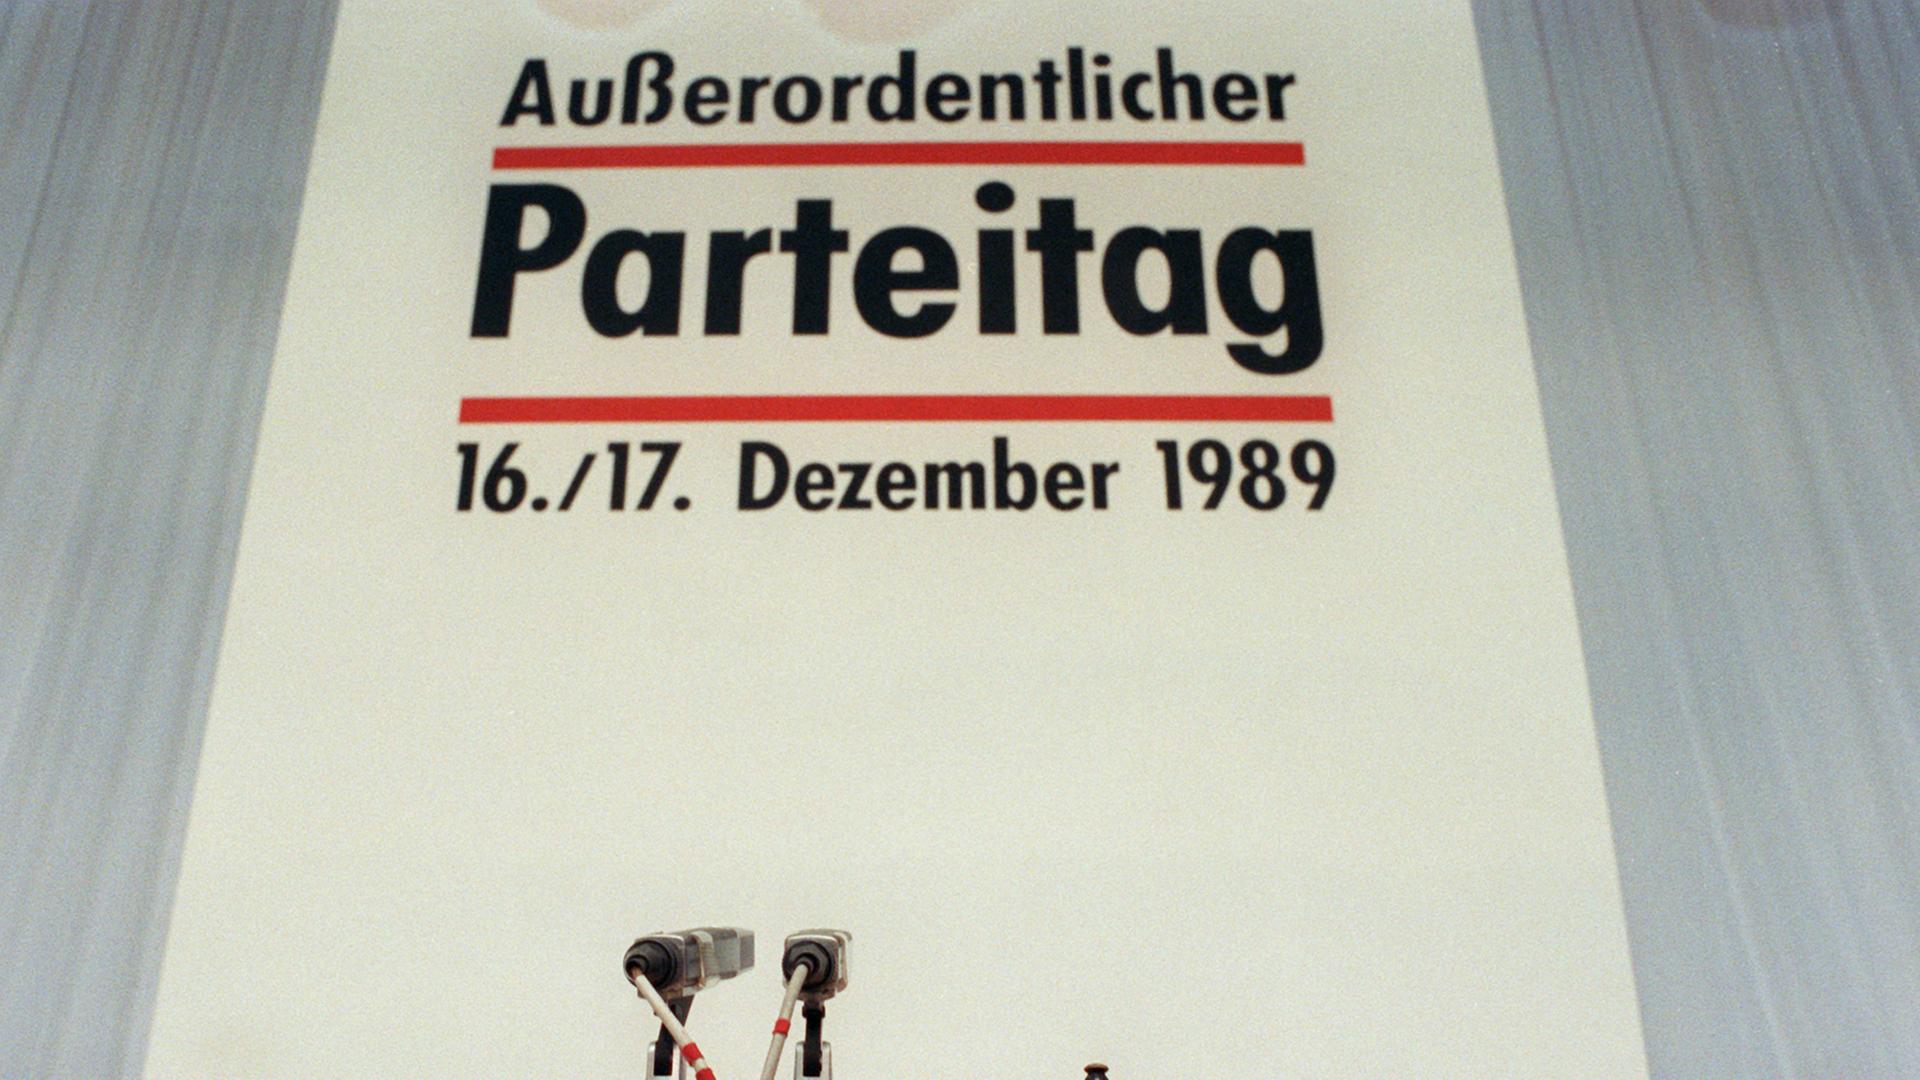 Blick auf das Präsidium des Außerordentlichen Parteitages der SED-PDS am 16.12.1989 in Berlin. Neben dem Mikrofon steht die Glocke des Tagungsleiters, an diesem Tag war es der Dresdener Oberbürgermeister Berghofer.